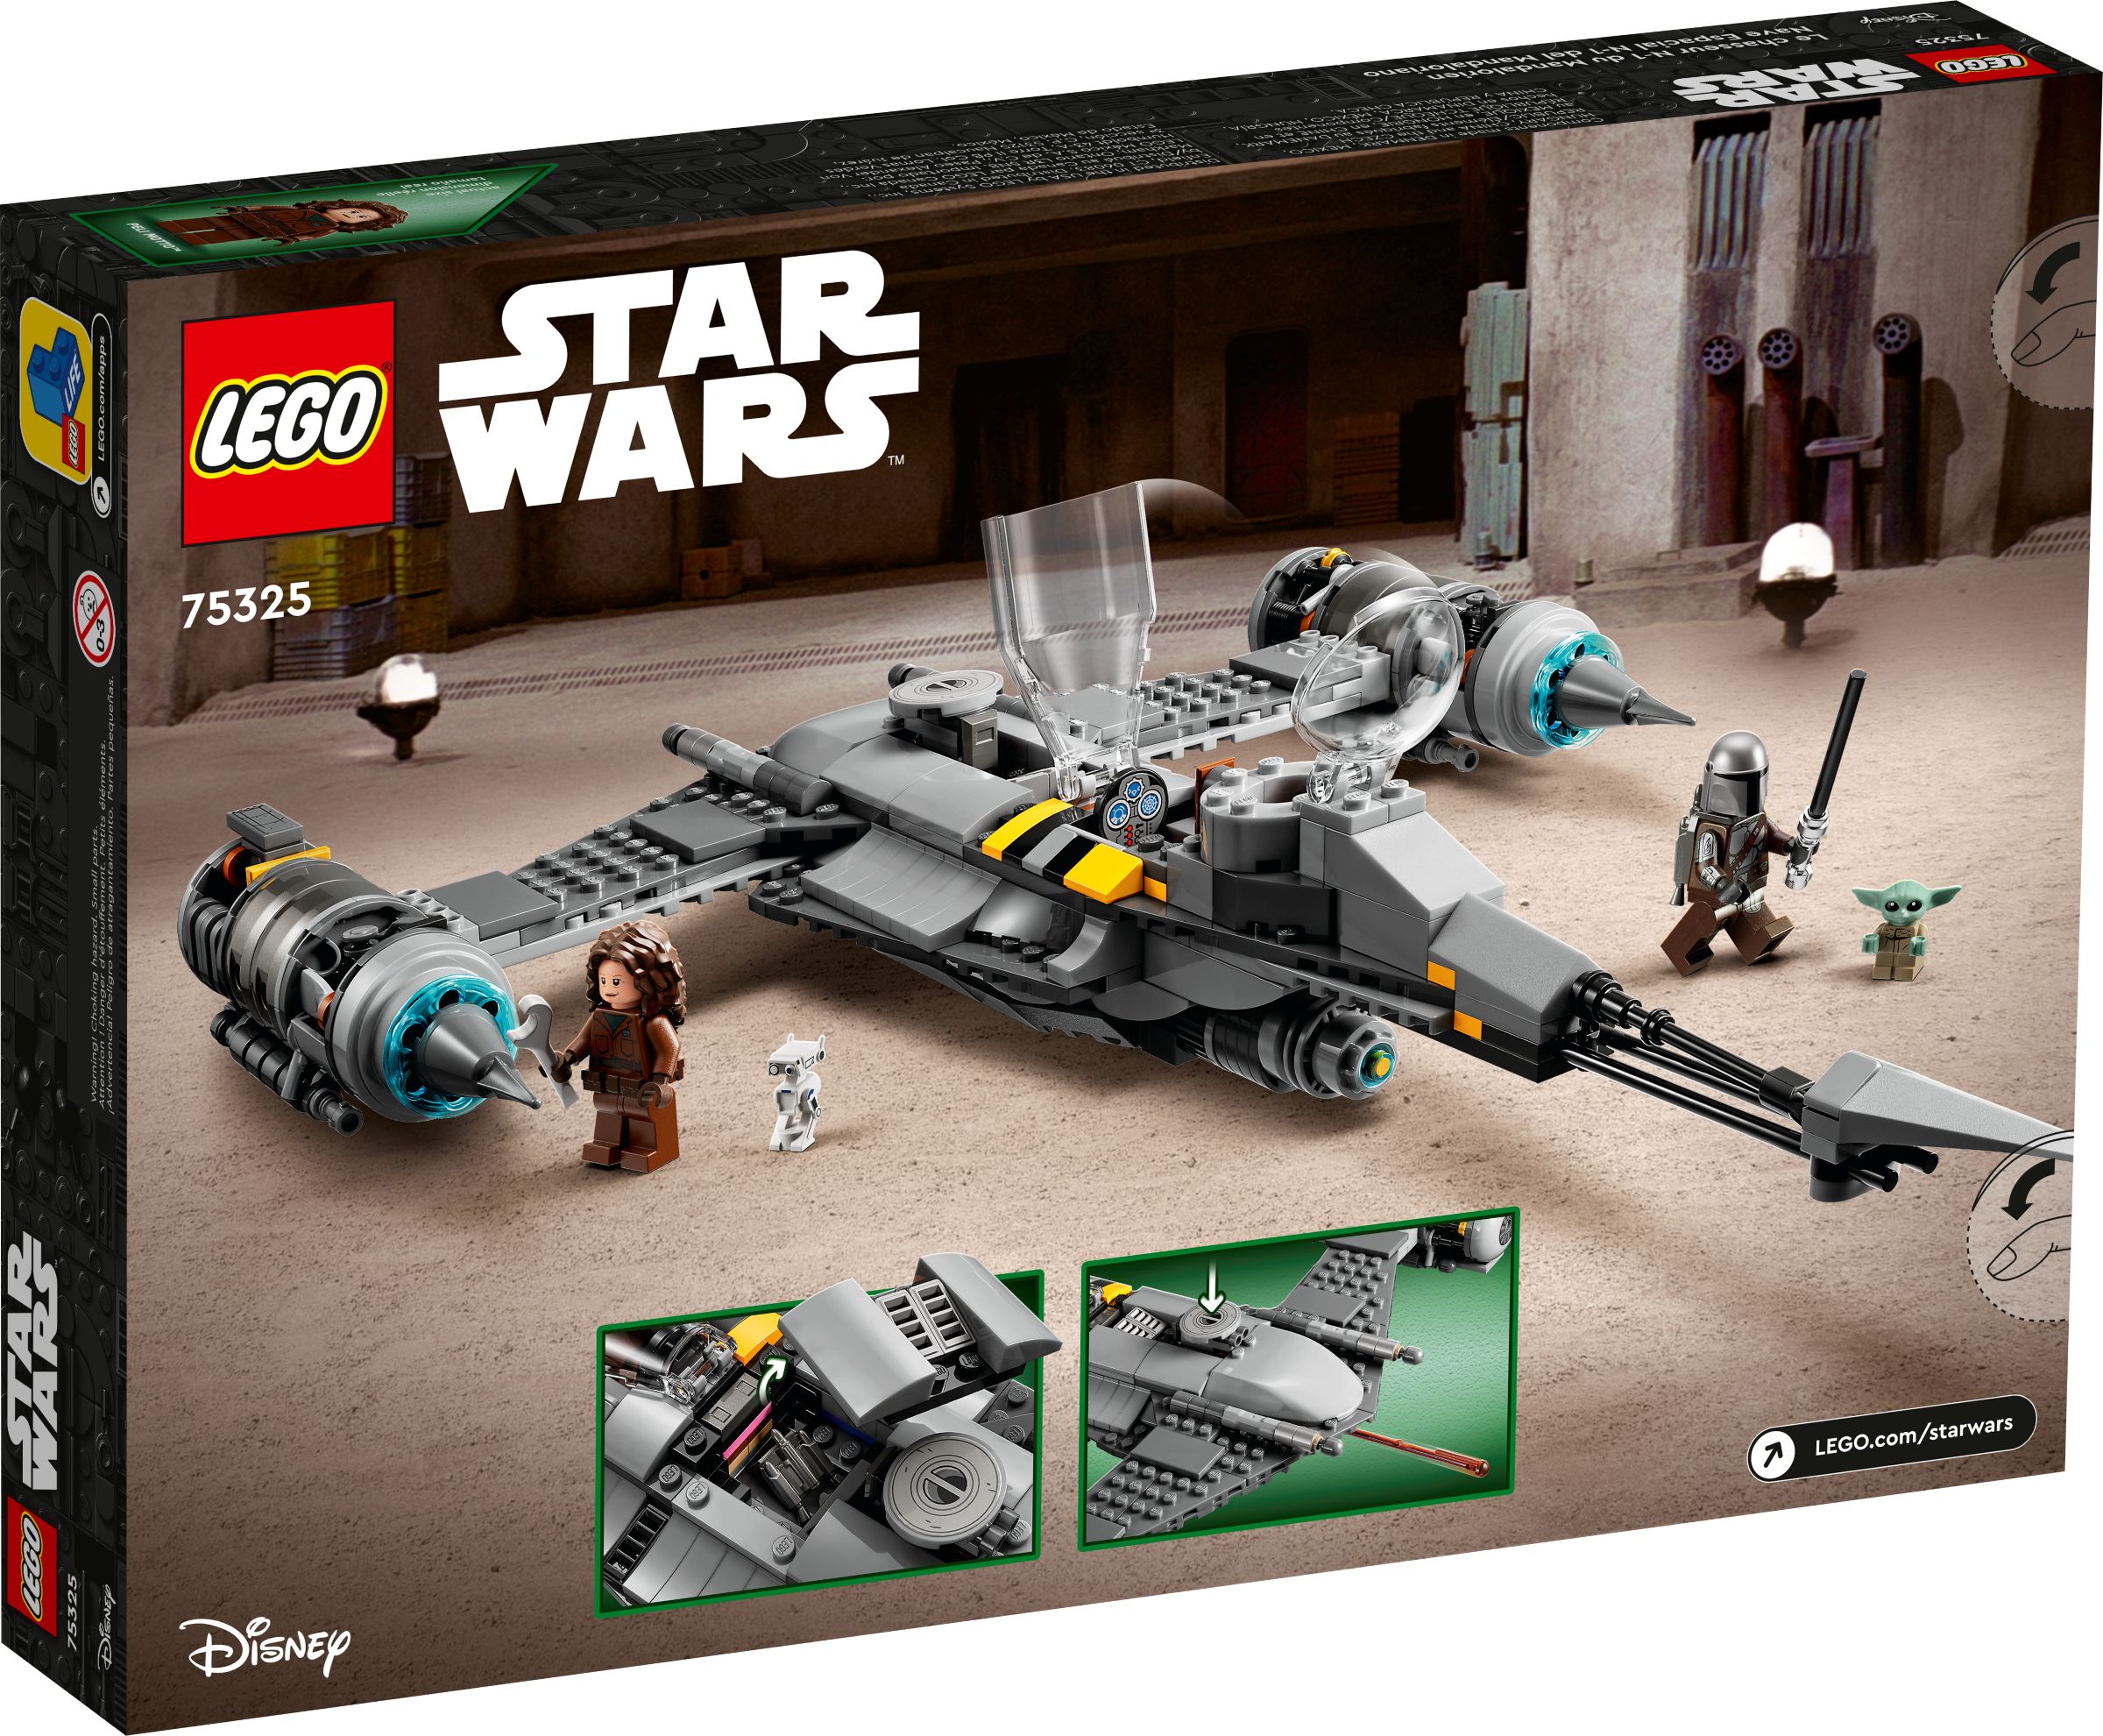 LEGO Star Wars 75325 Der N-1 Starfighter des Mandalorianers LEGO_75325_alt2.jpg